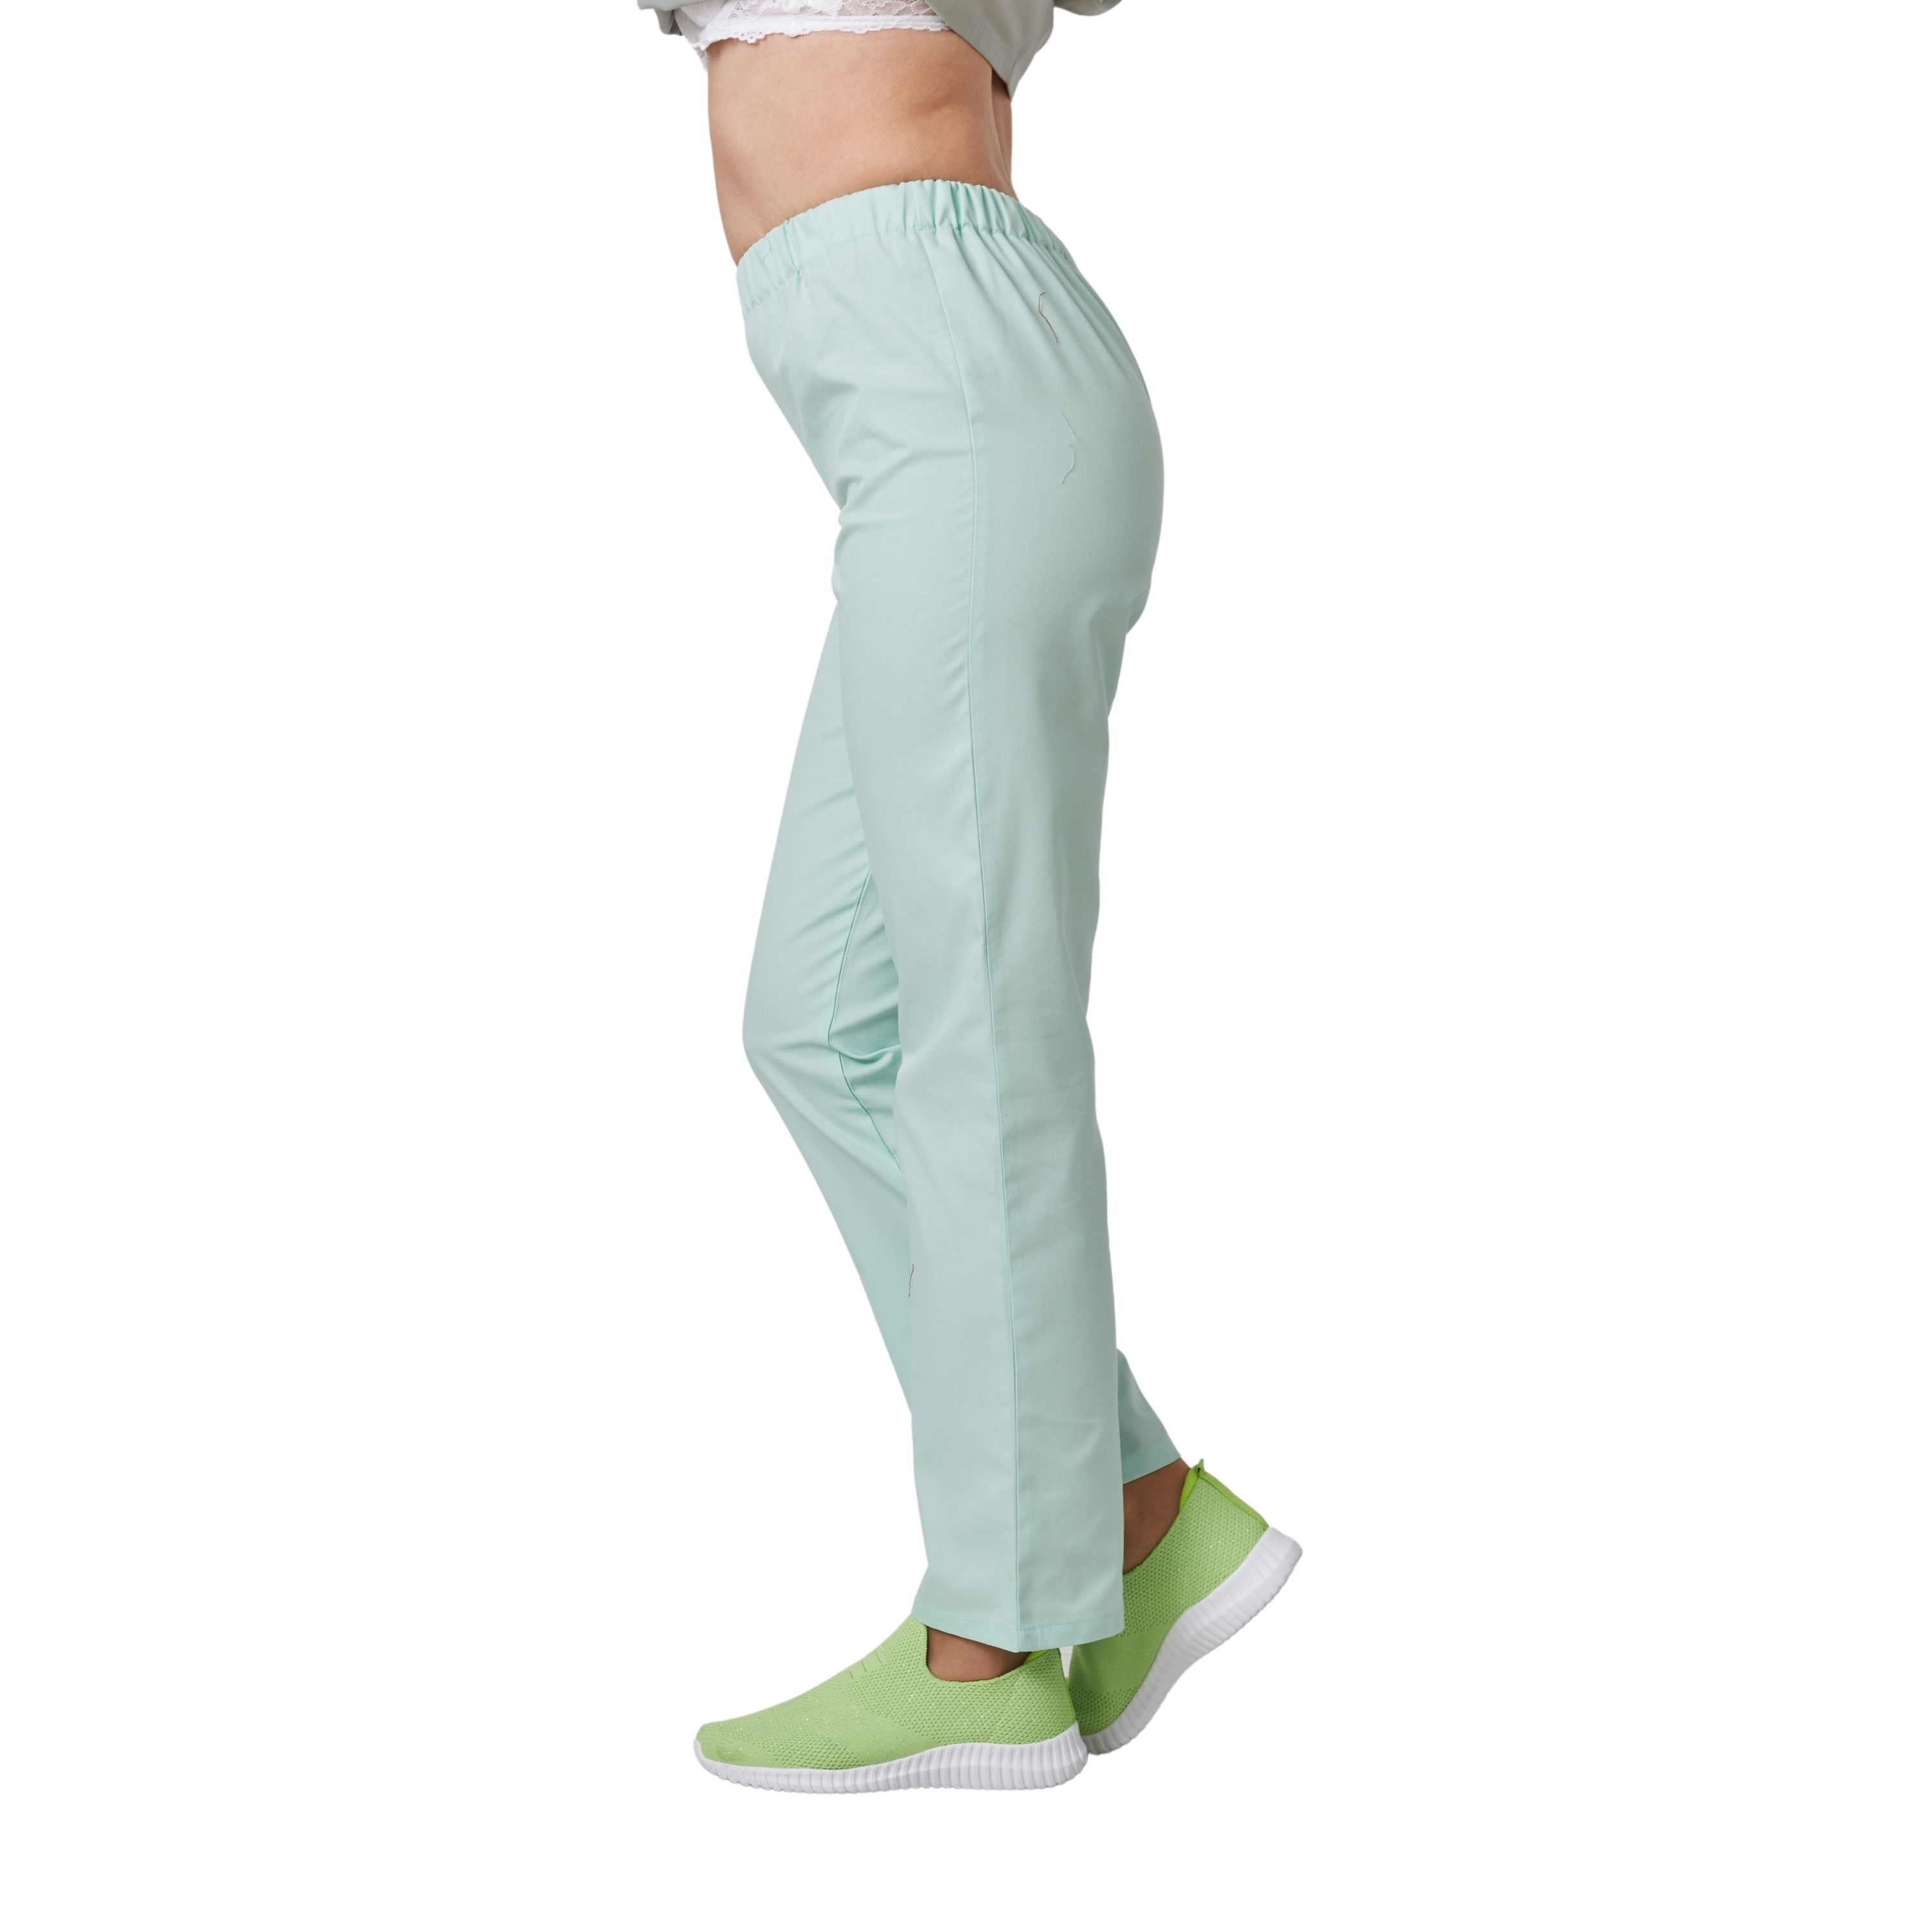 Pantalon coupe droite pour professionnel médical coloris vert Manelli